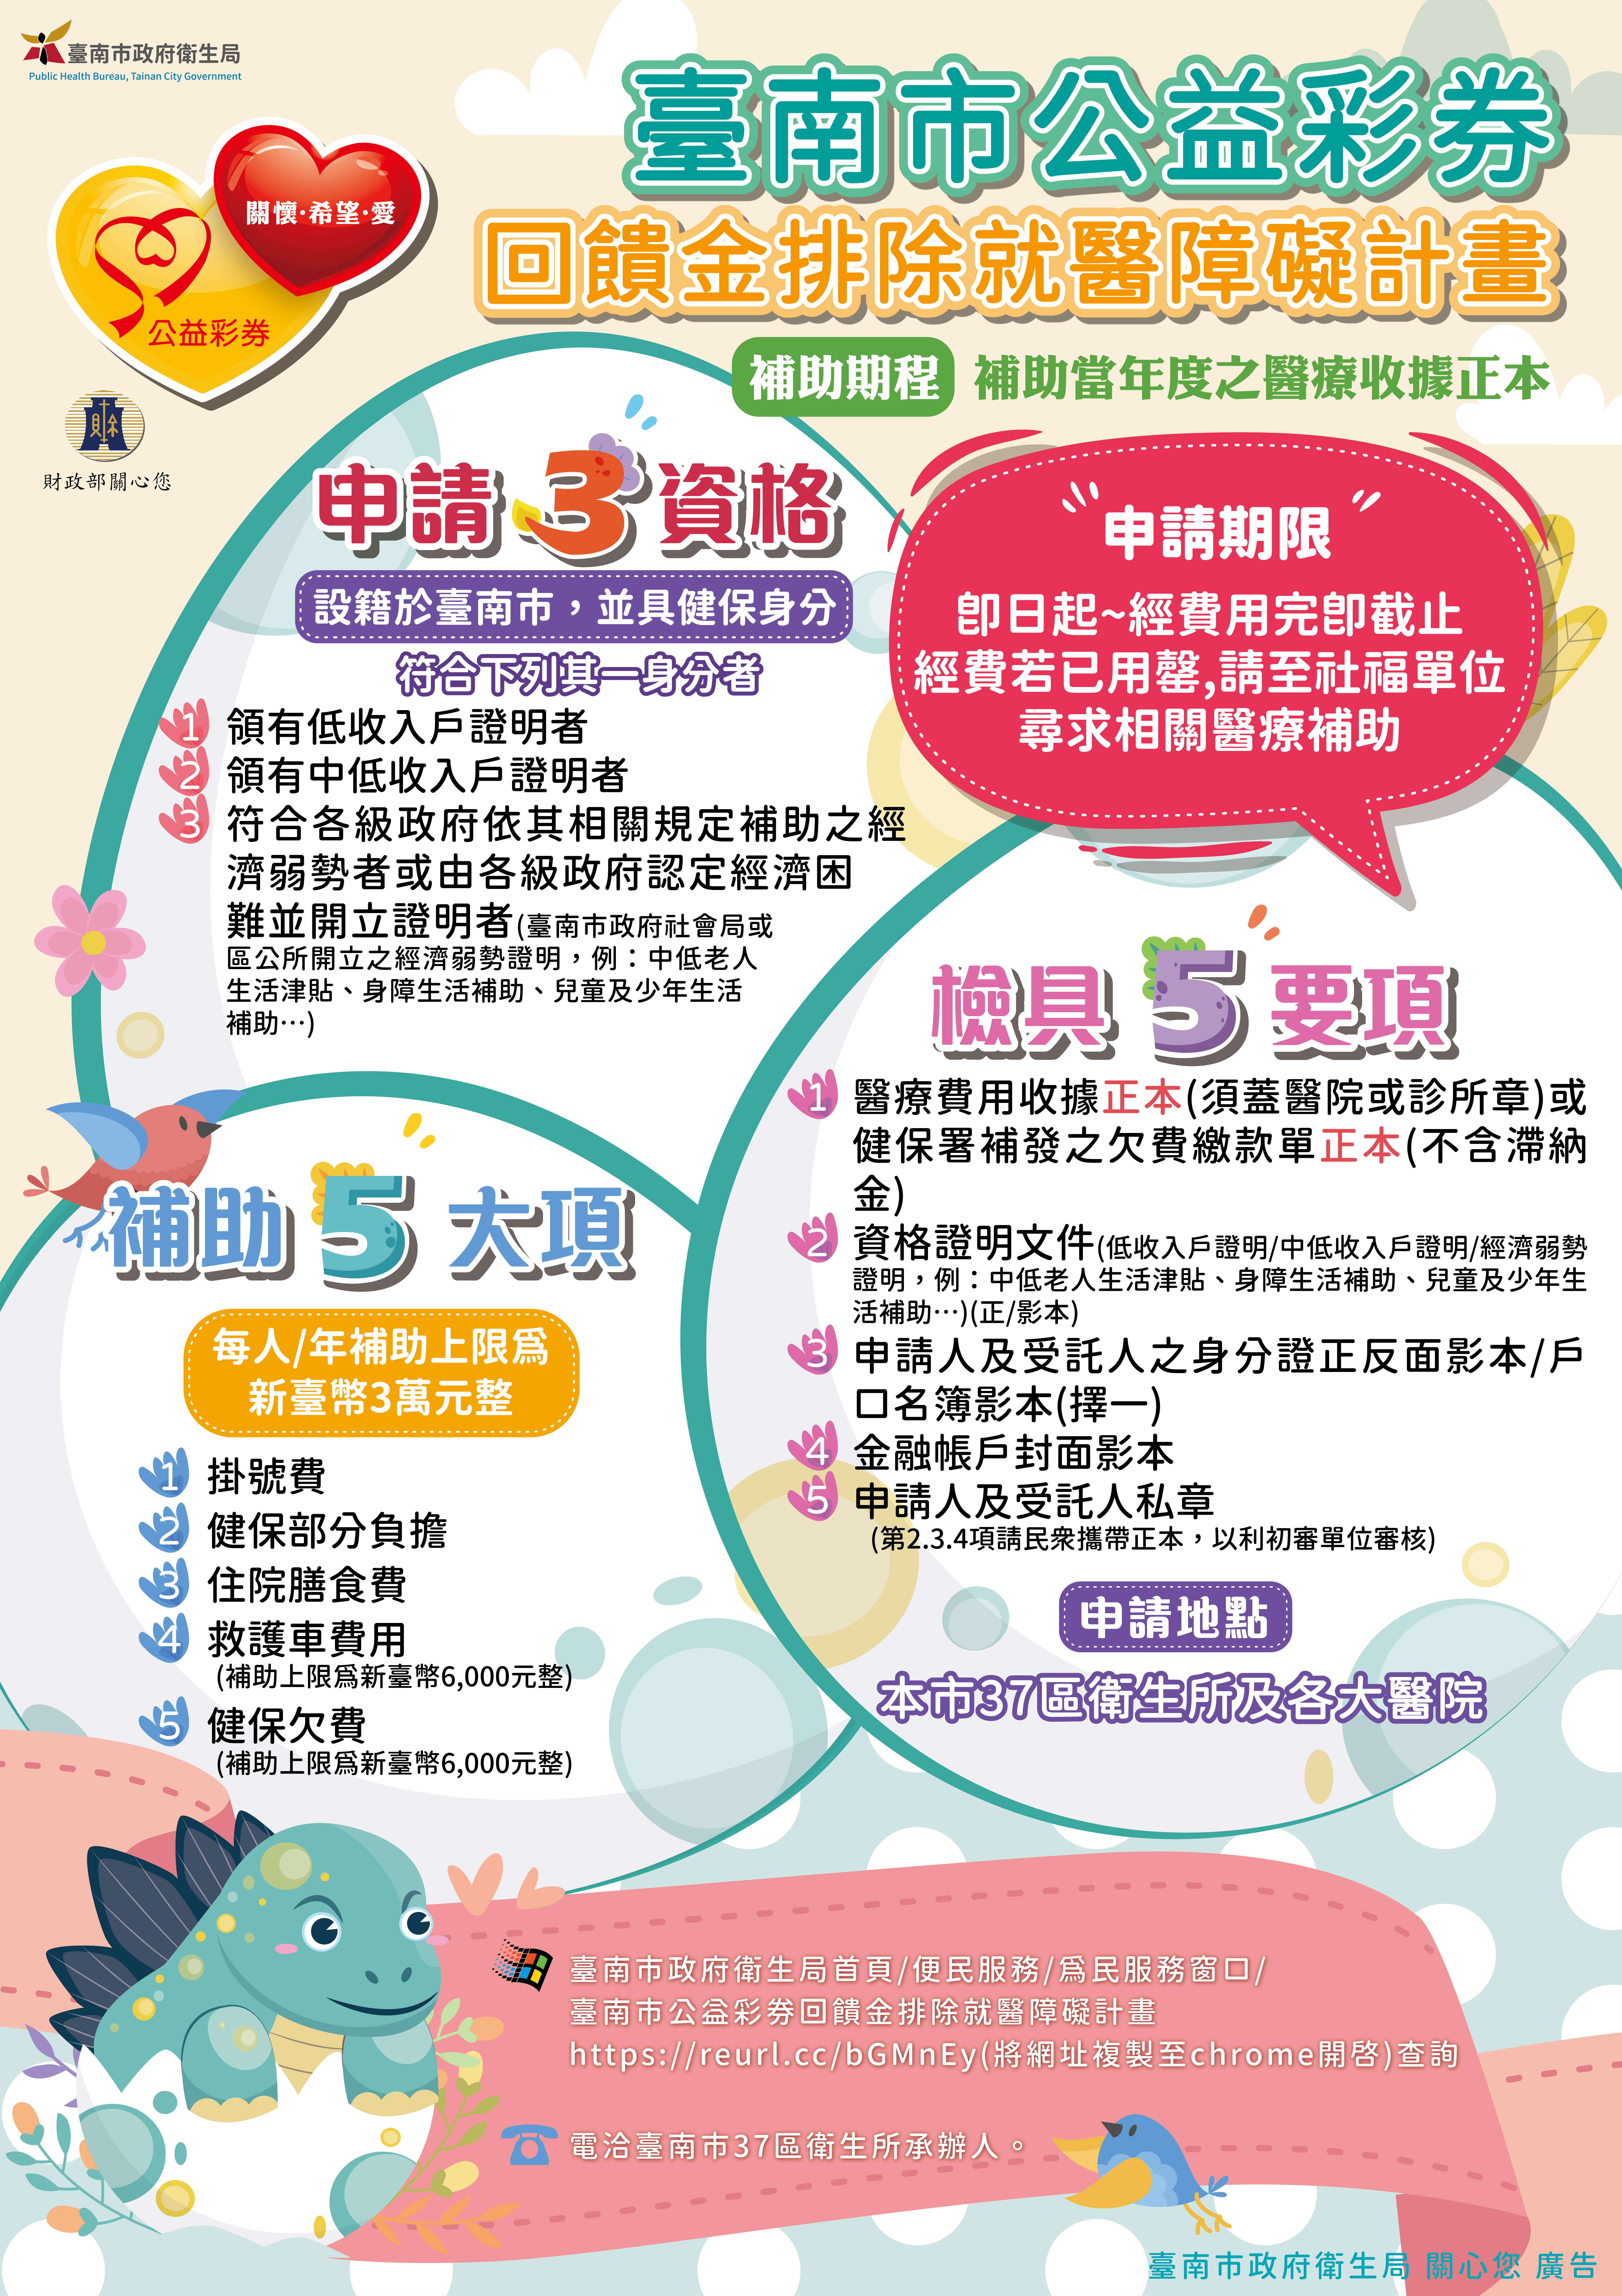 113年度臺南市公益彩券回饋金排除就醫障礙計畫海報